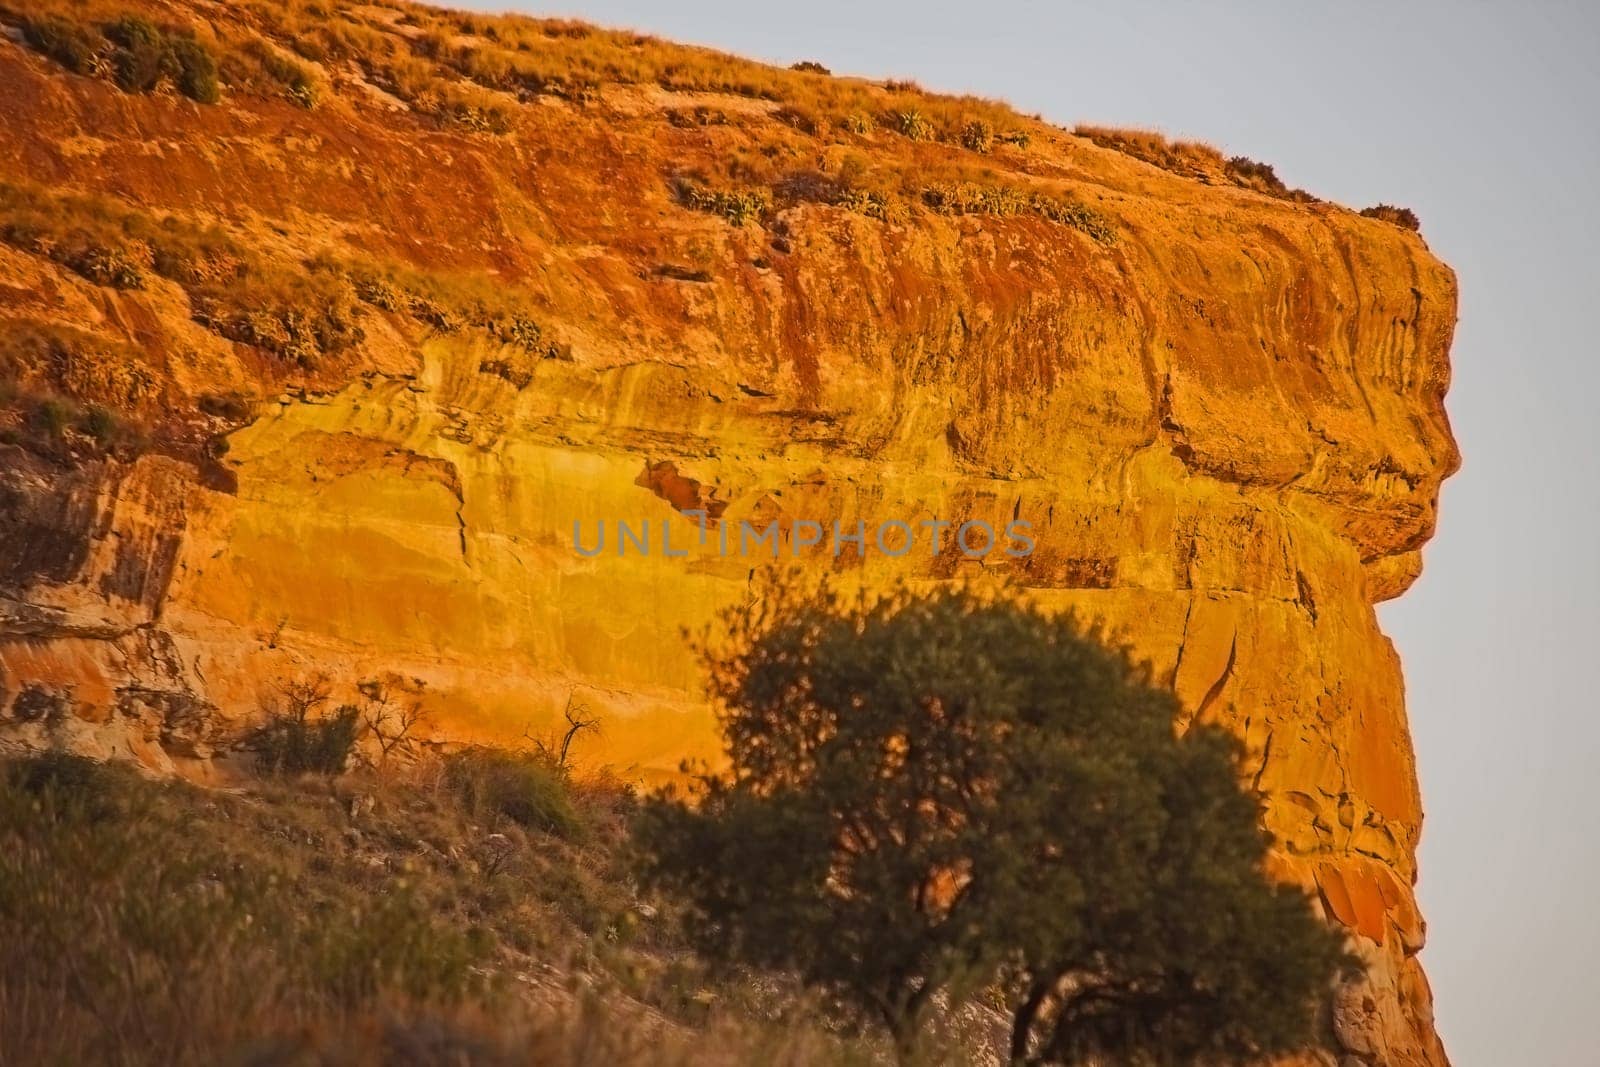 Drakensberg Sandstone cliff 16018 by kobus_peche